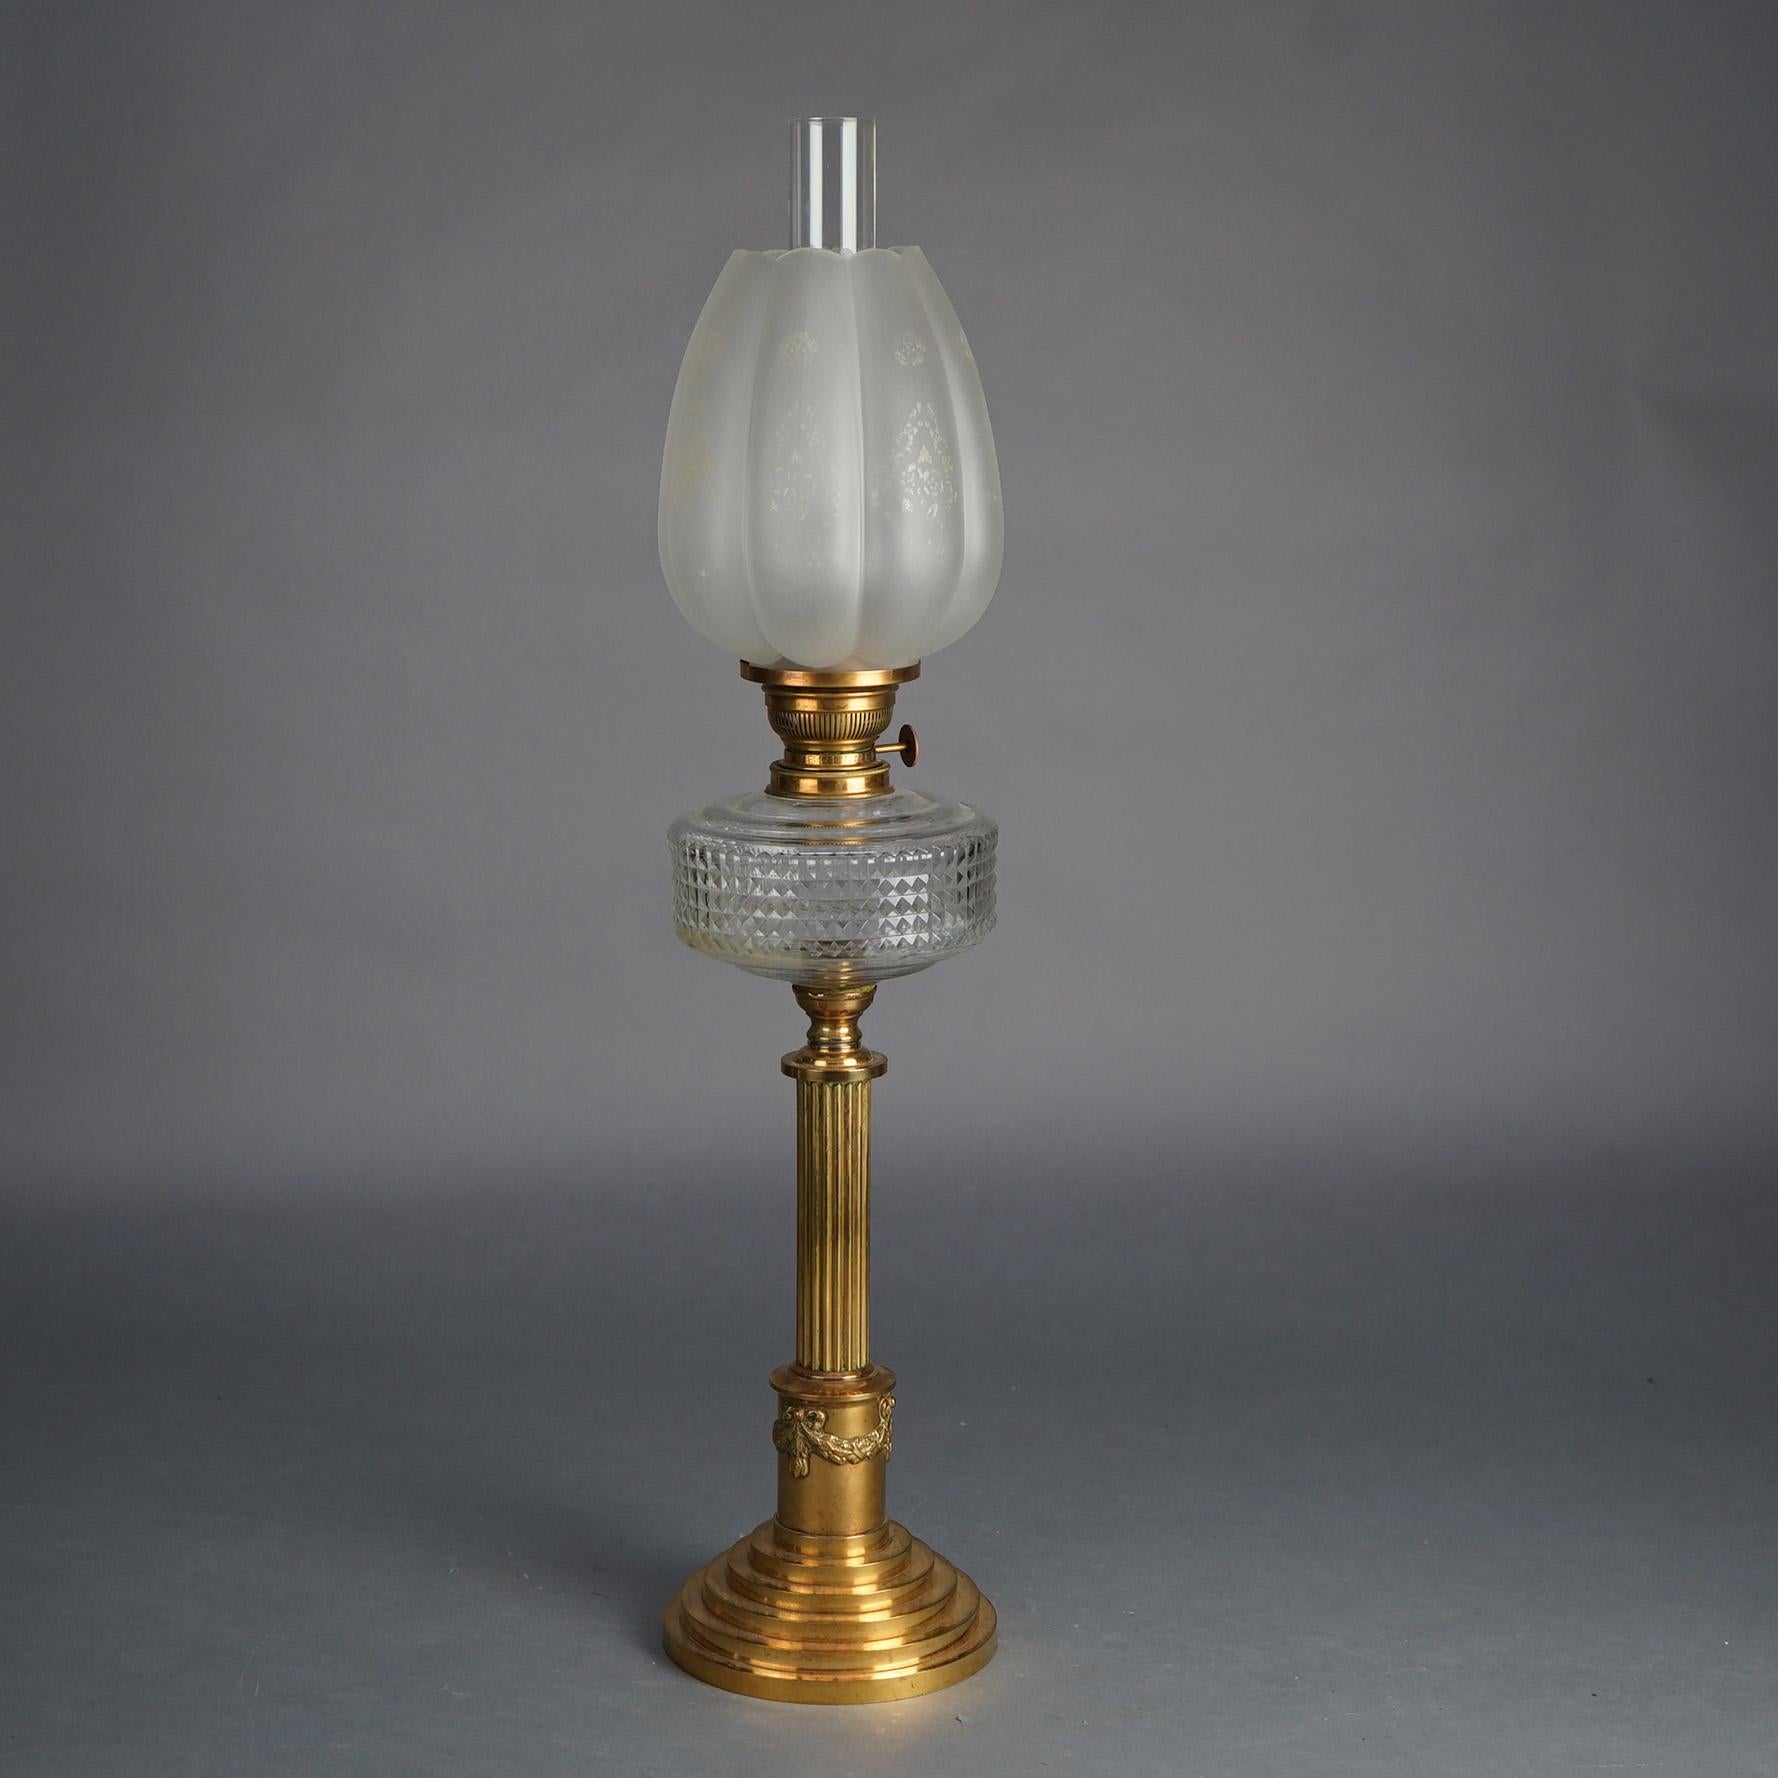 Lampe à huile ancienne en bronze néoclassique avec base cannelée et évasée, fonte en verre pressé et abat-jour floral en verre ondulé C1890

Mesures : 30''H x 6.75''W x 6.75''D